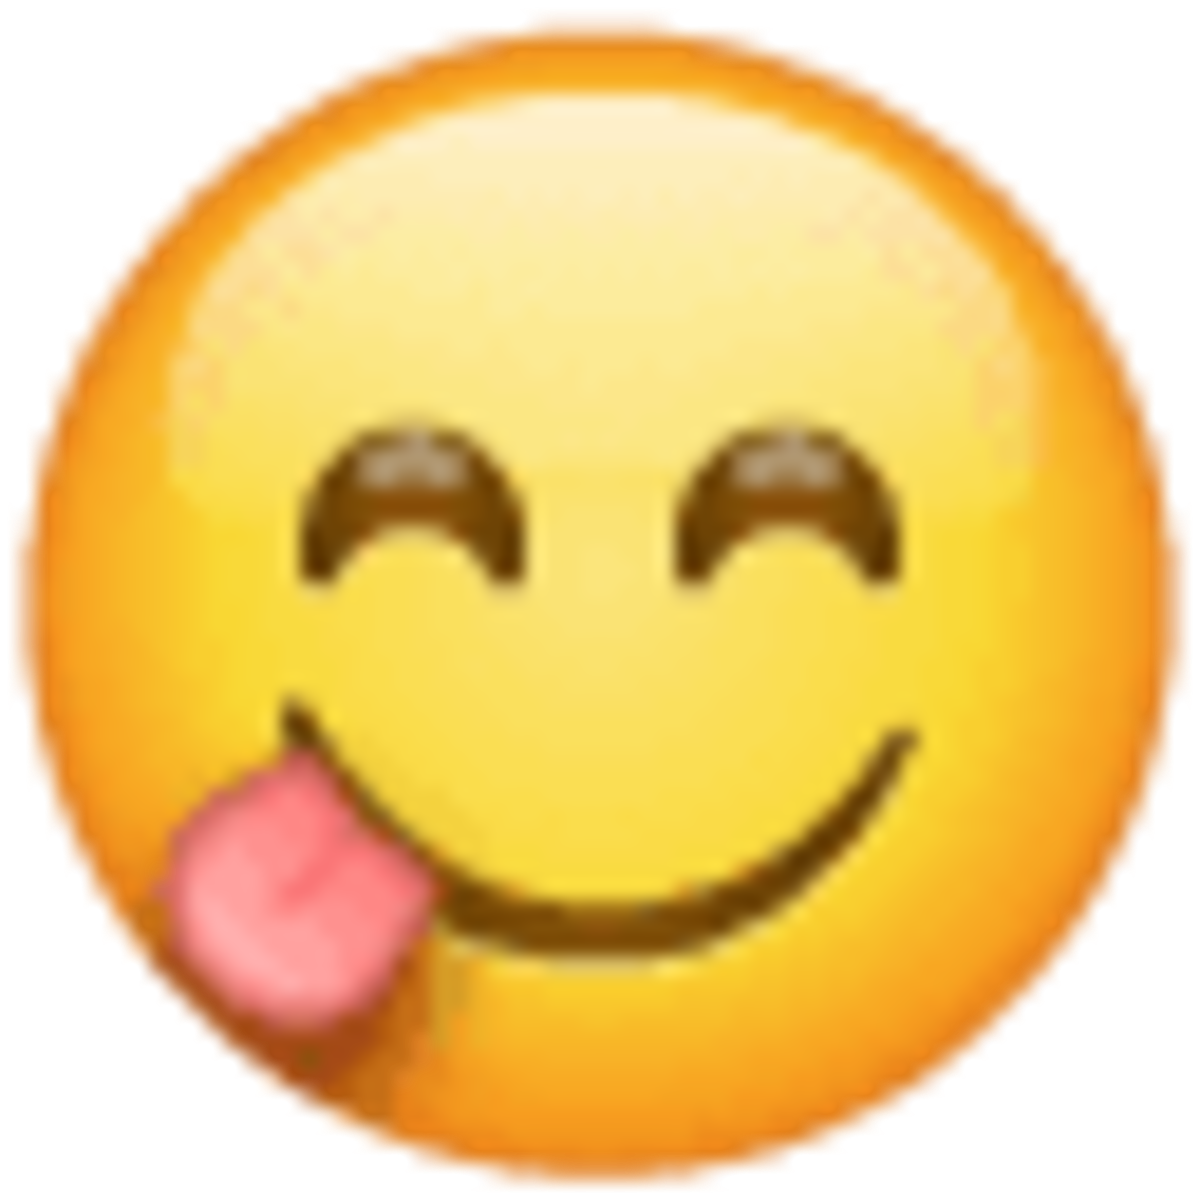 Emoji 1f60b. cara sonriente con la lengua fuera